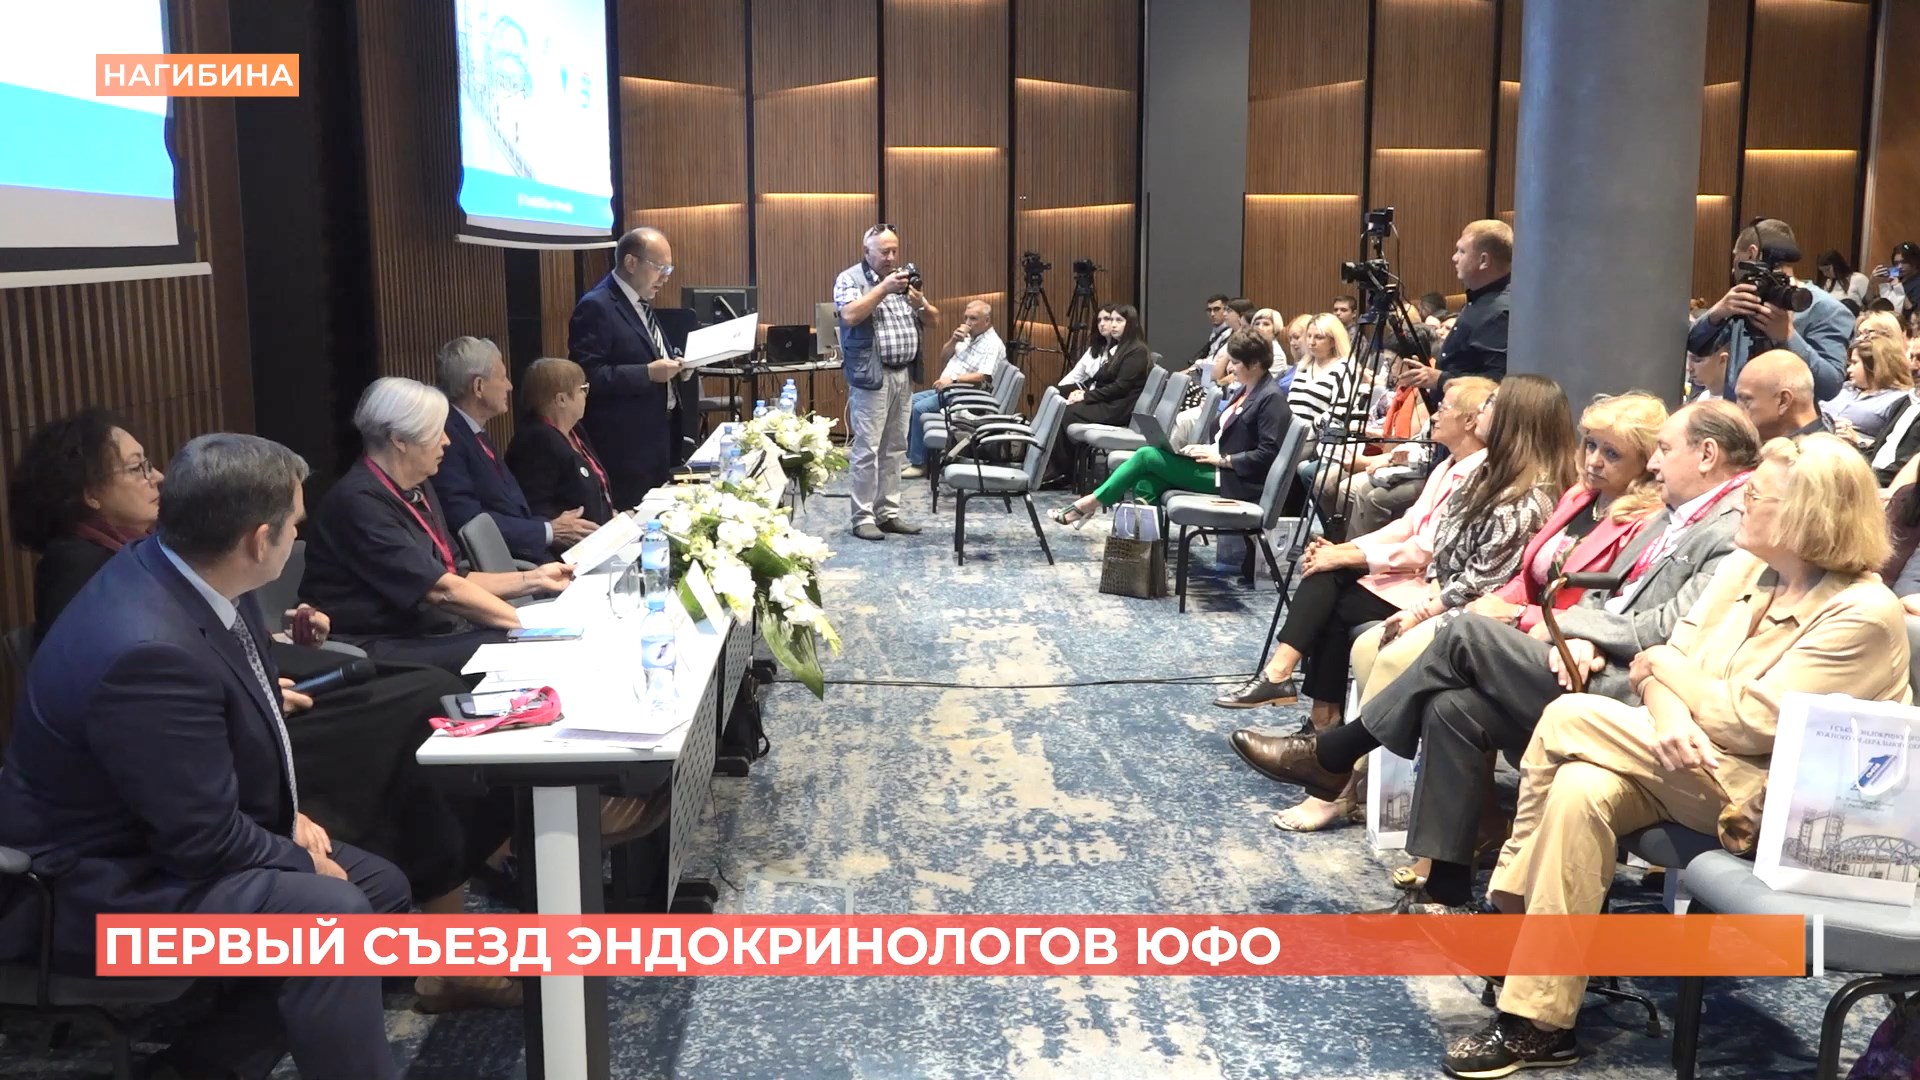 Первый съезд эндокринологов ЮФО открылся в Ростове